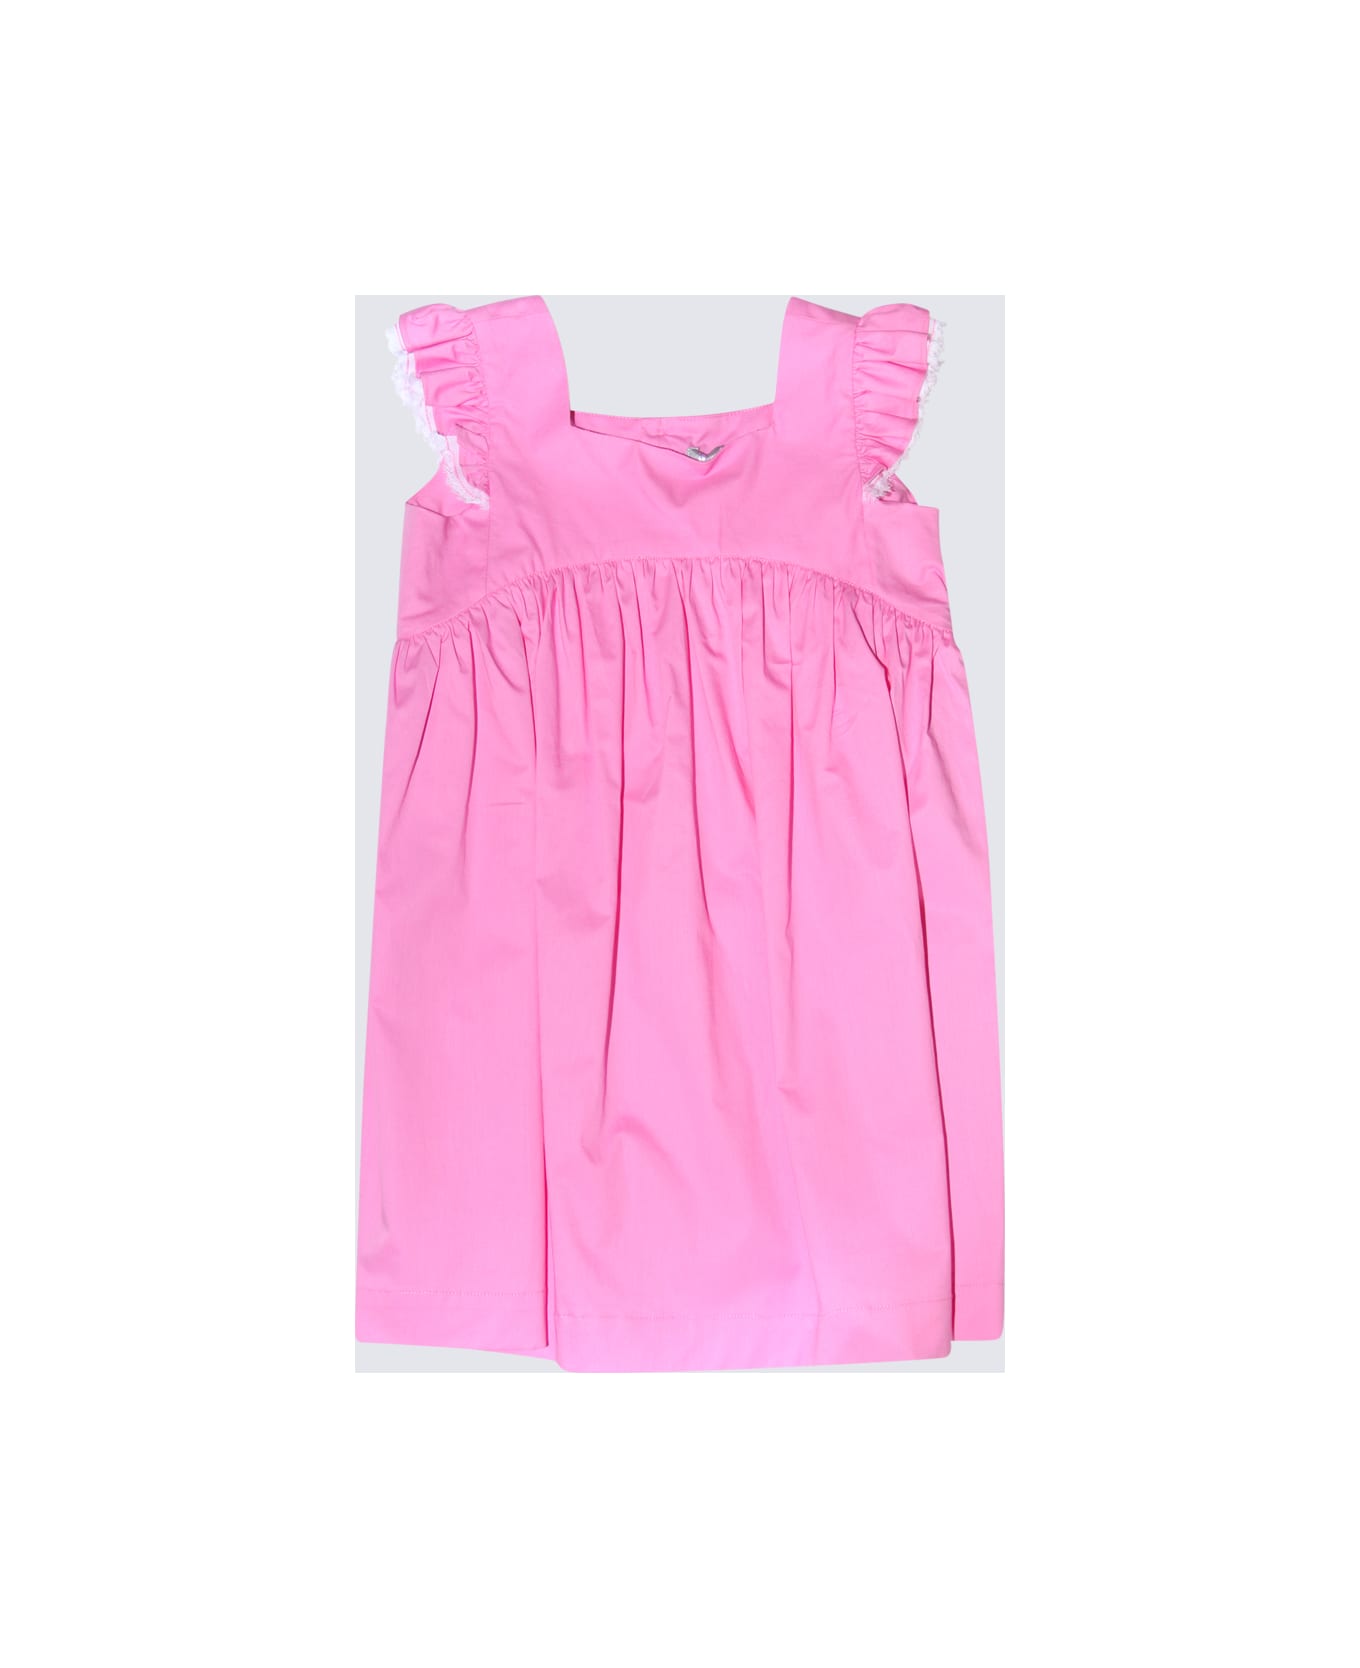 Il Gufo Pink Cotton Dress - Pink ジャンプスーツ